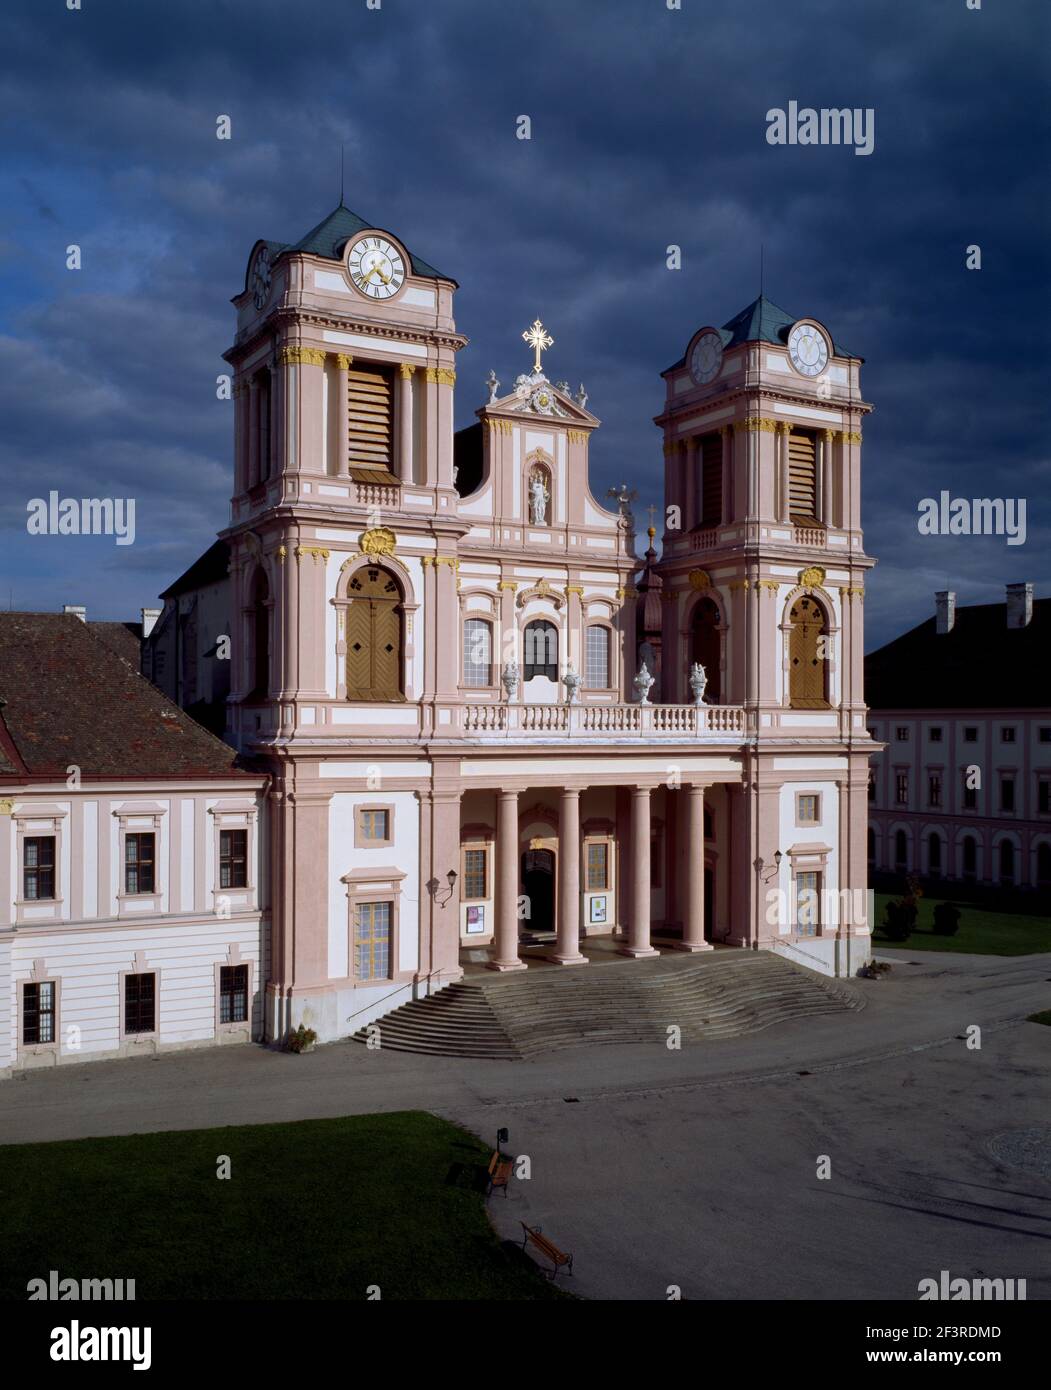 Hof mit zentraler Stiftskirche von Nordwesten, Gˆttweig, Stift Stock Photo